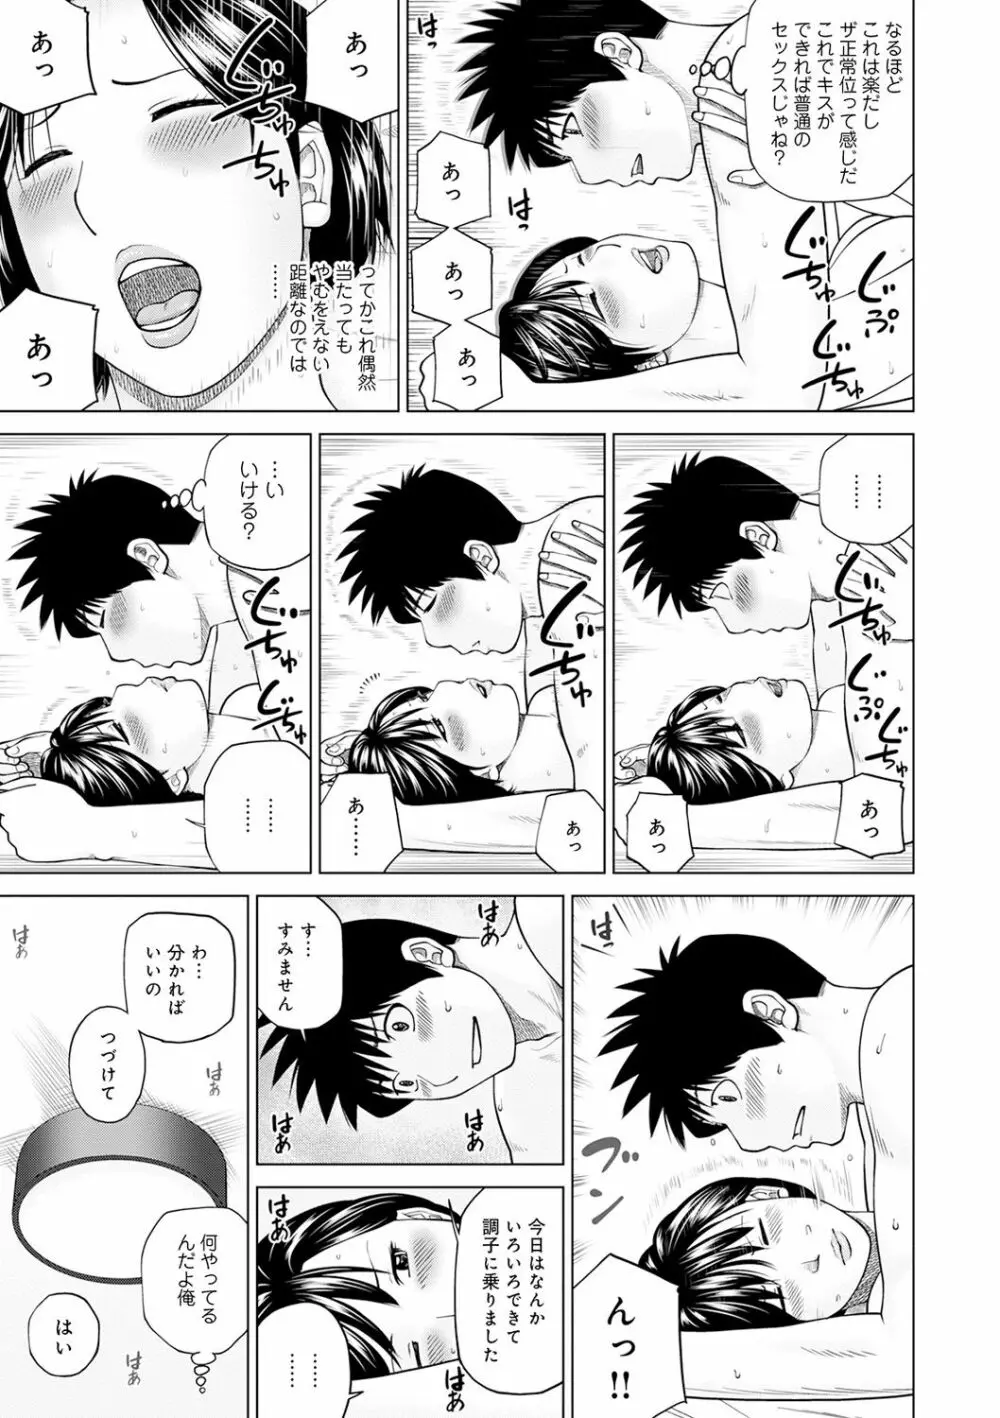 WEB版コミック激ヤバ! Vol.143 14ページ